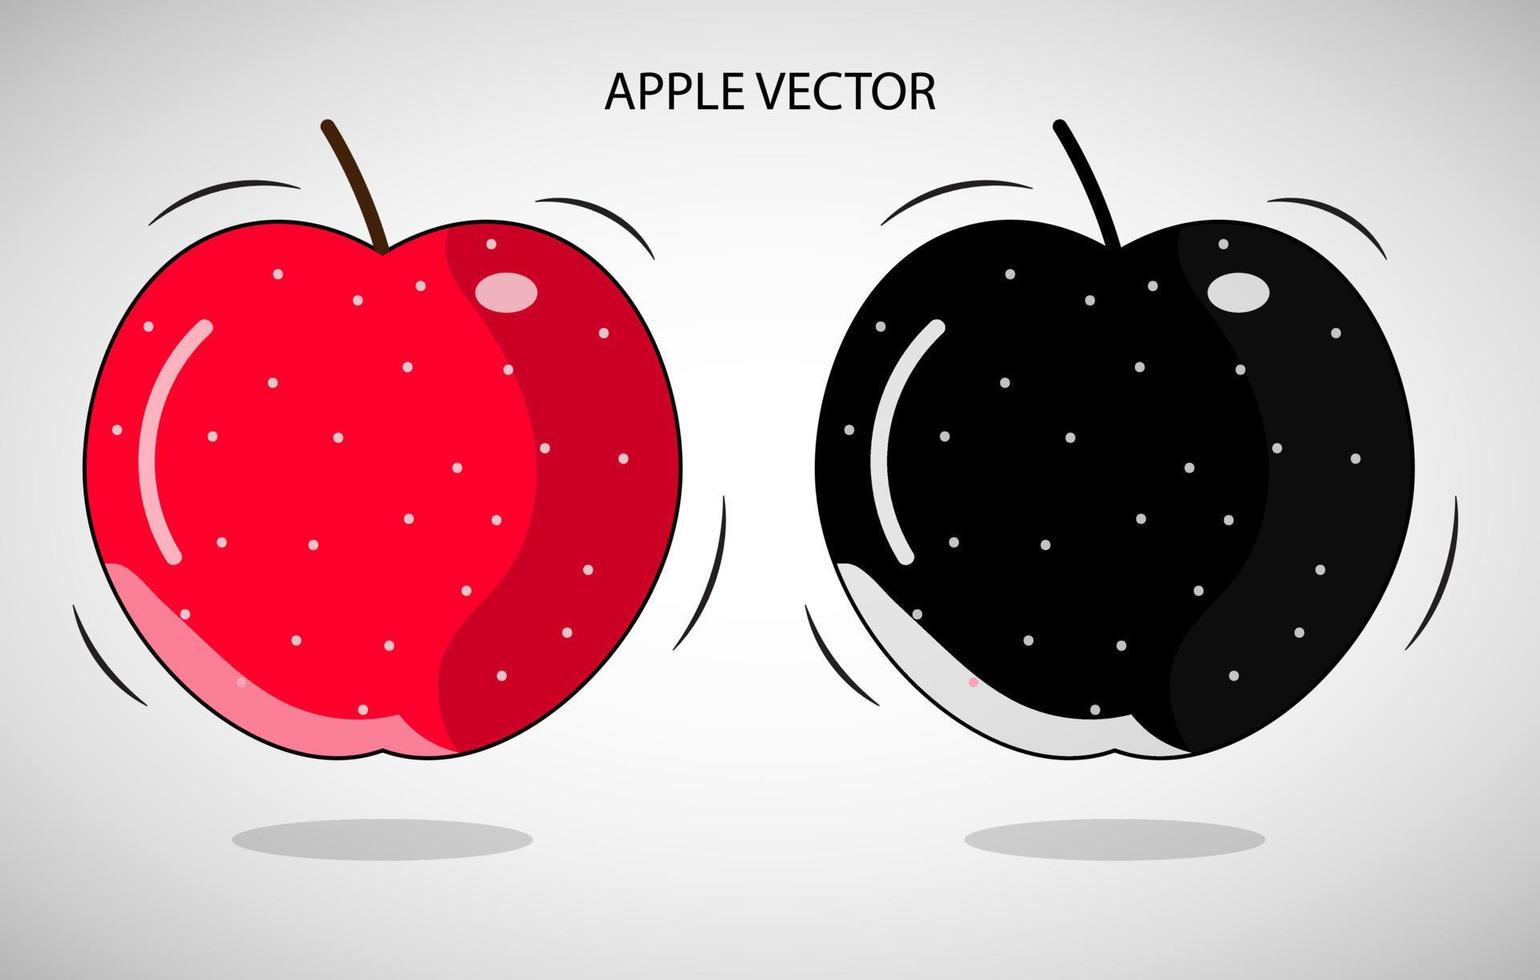 vetor de ilustração de maçã grátis, vetor de maçã vermelha e preta, vetor de maçã plana, desenho de maçã colorida, ícone de fruta de maçã